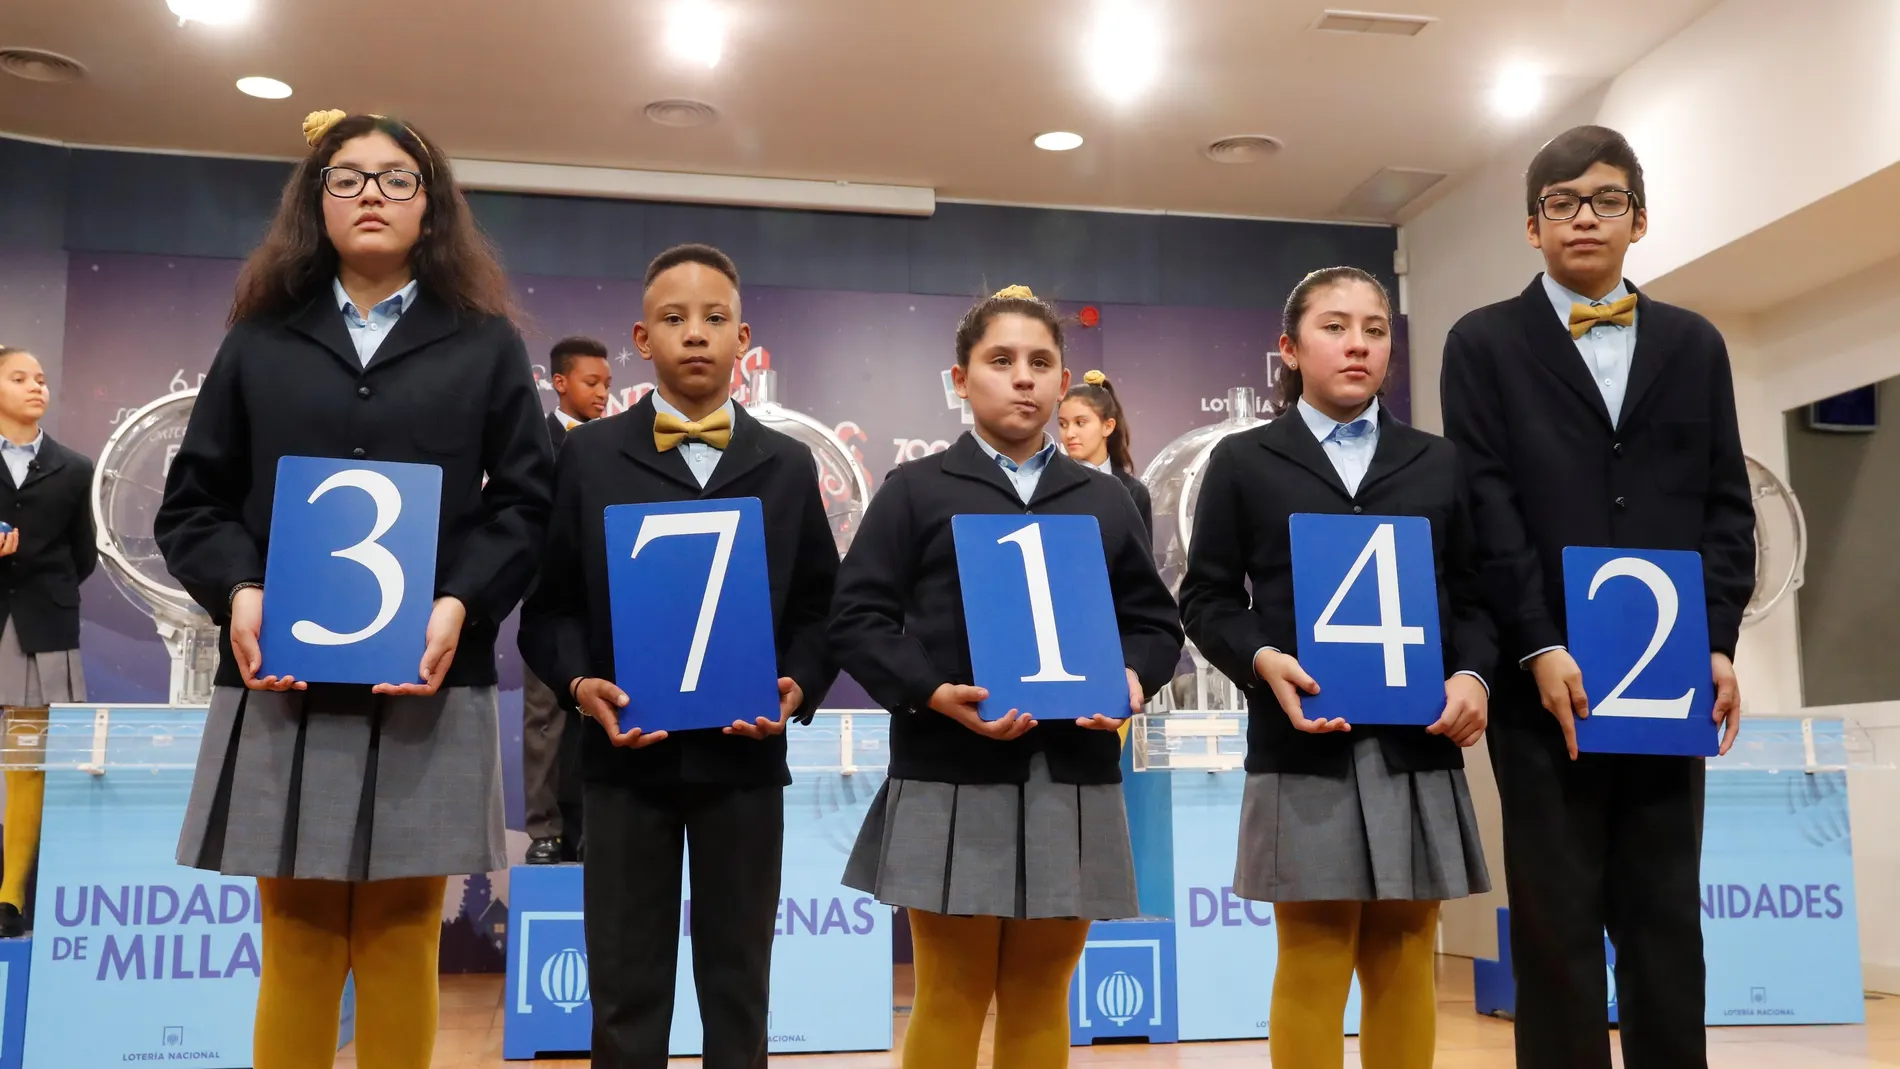 Los niños de San Ildefonso muestran el 37.142, primer premio del sorteo del Niño